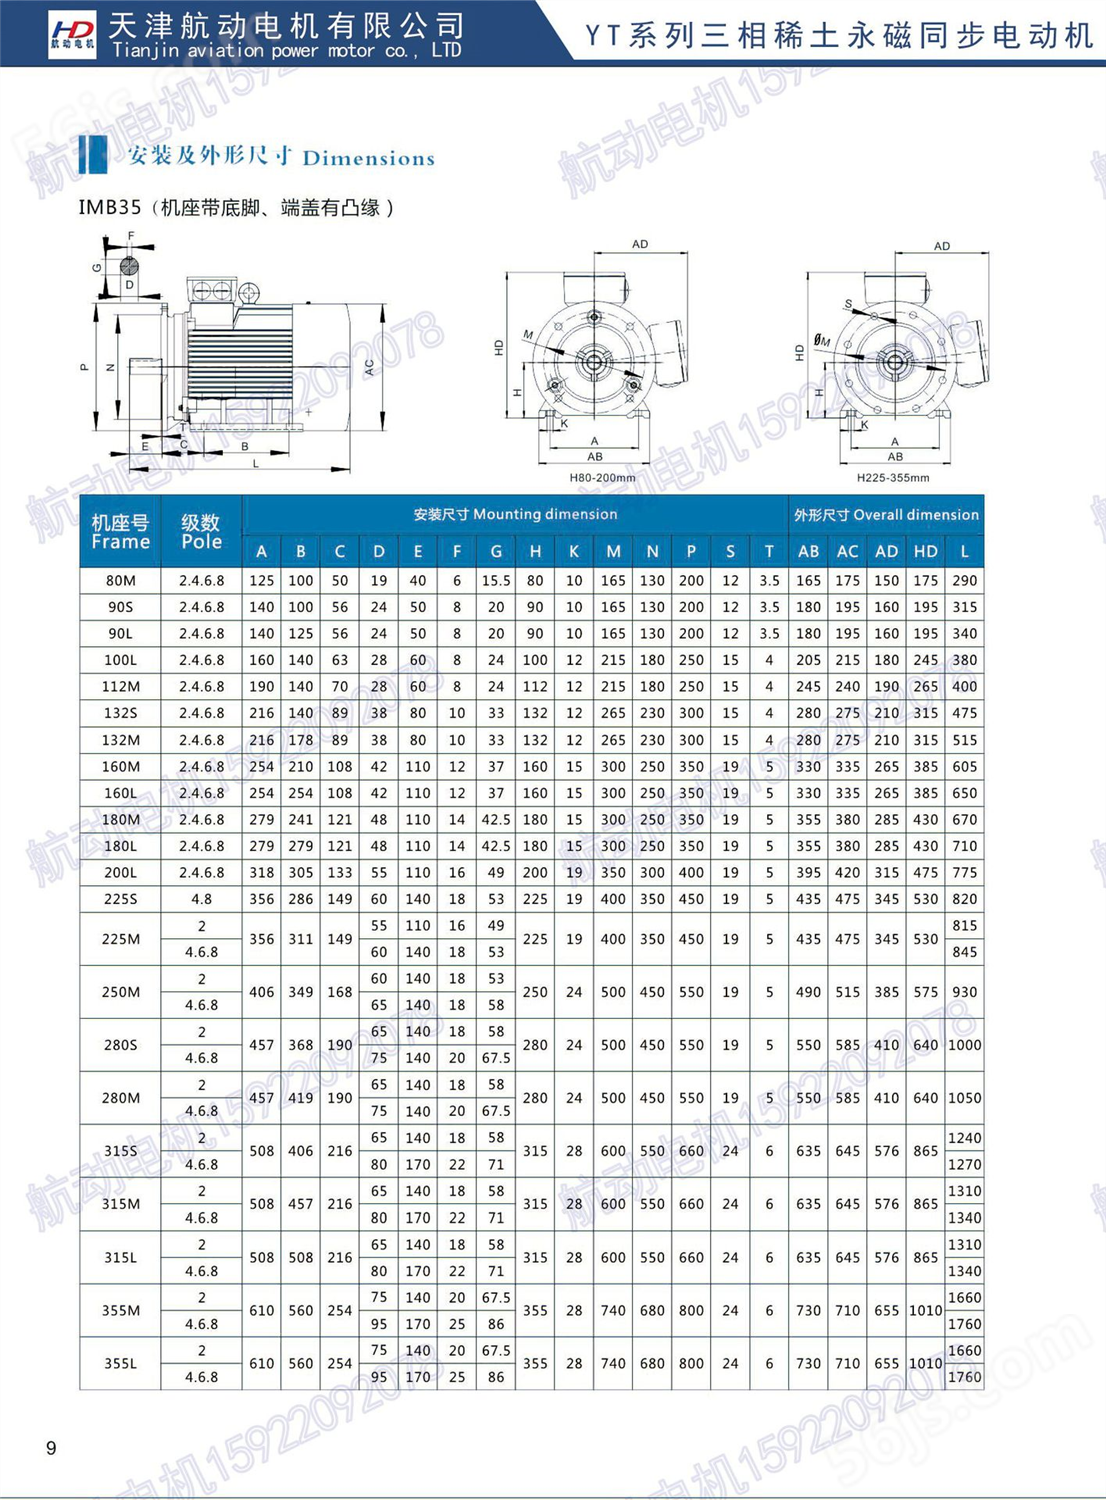 大量生产 YT-355L-750/250KW 定制永磁同步电机